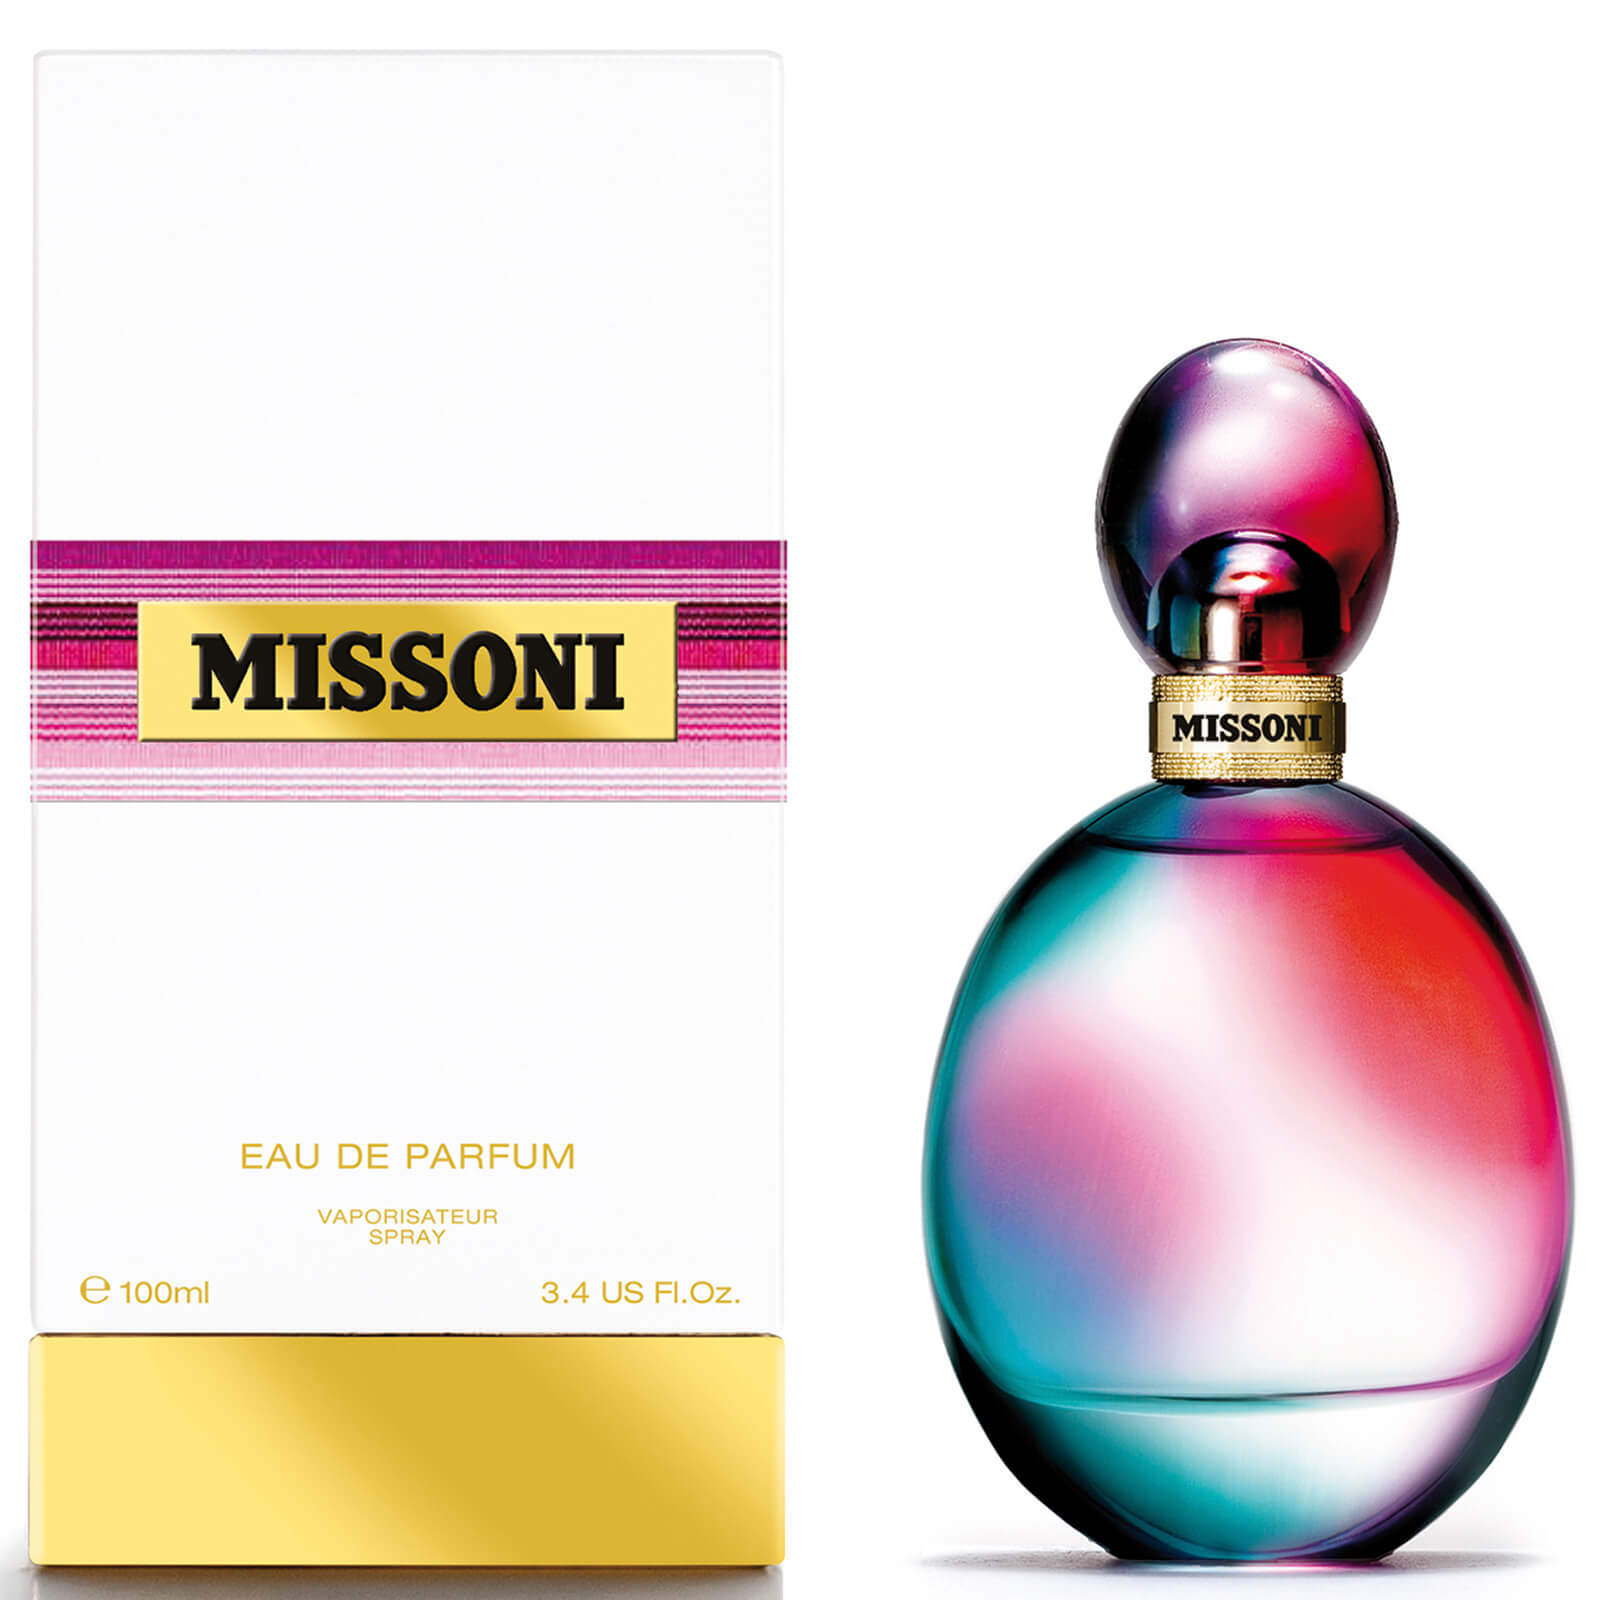 Eau de Parfum Missoni de Missoni (100 ml)